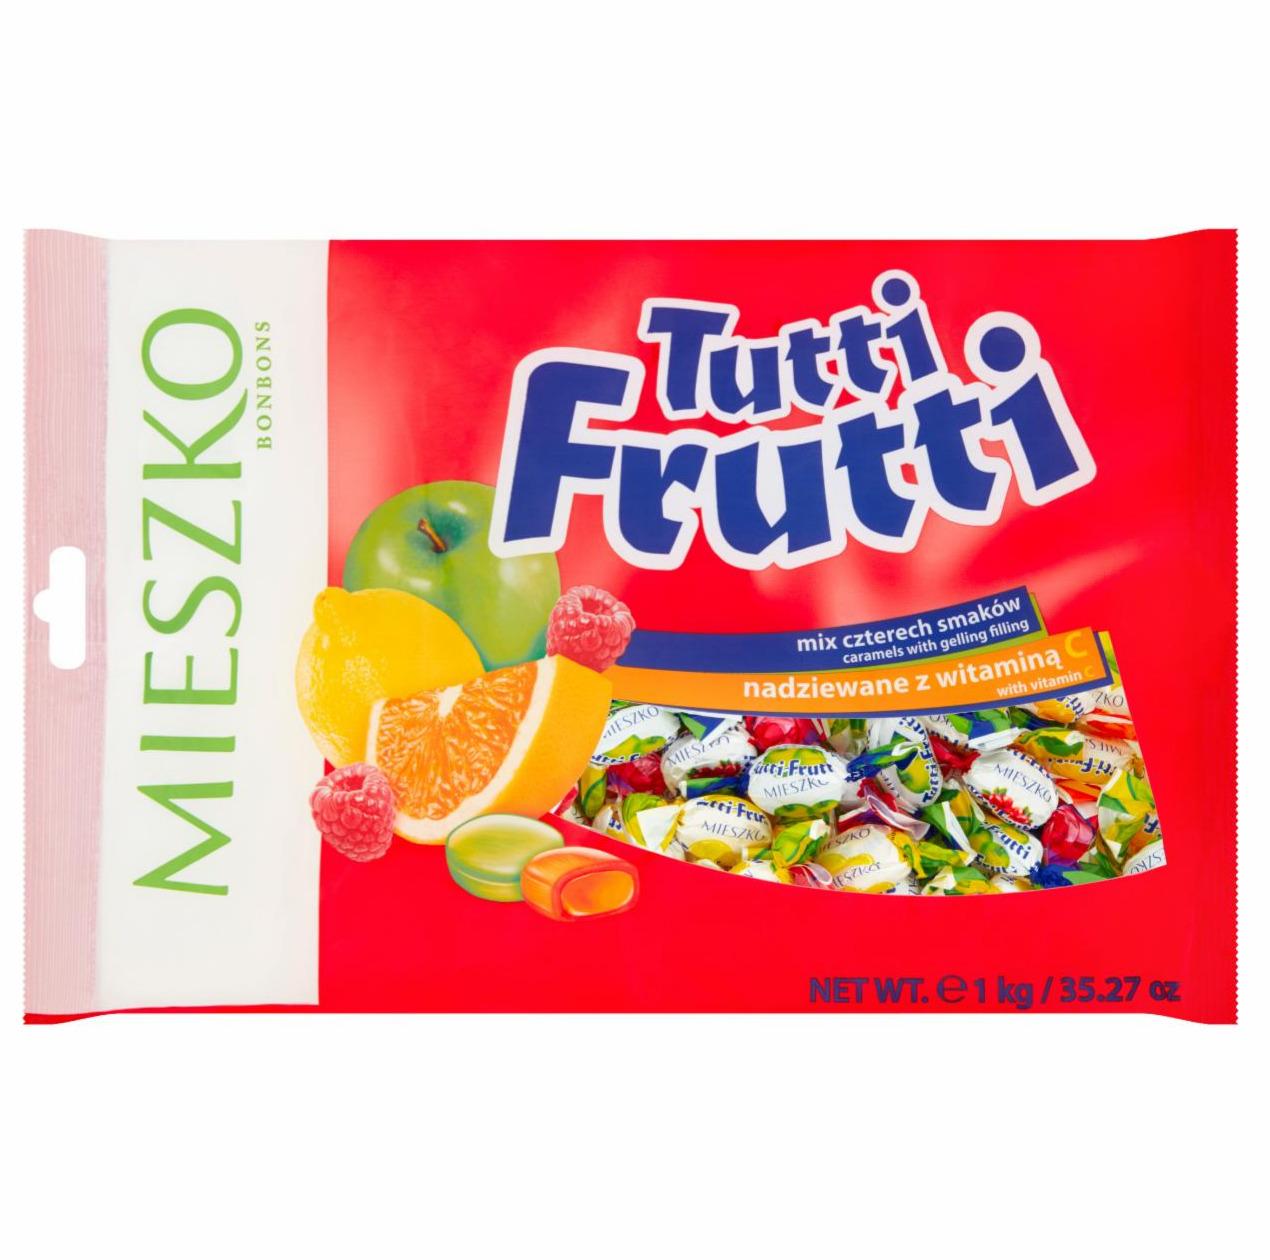 Zdjęcia - Tutti Frutti Karmelki z nadzieniem galaretkowym Mieszko